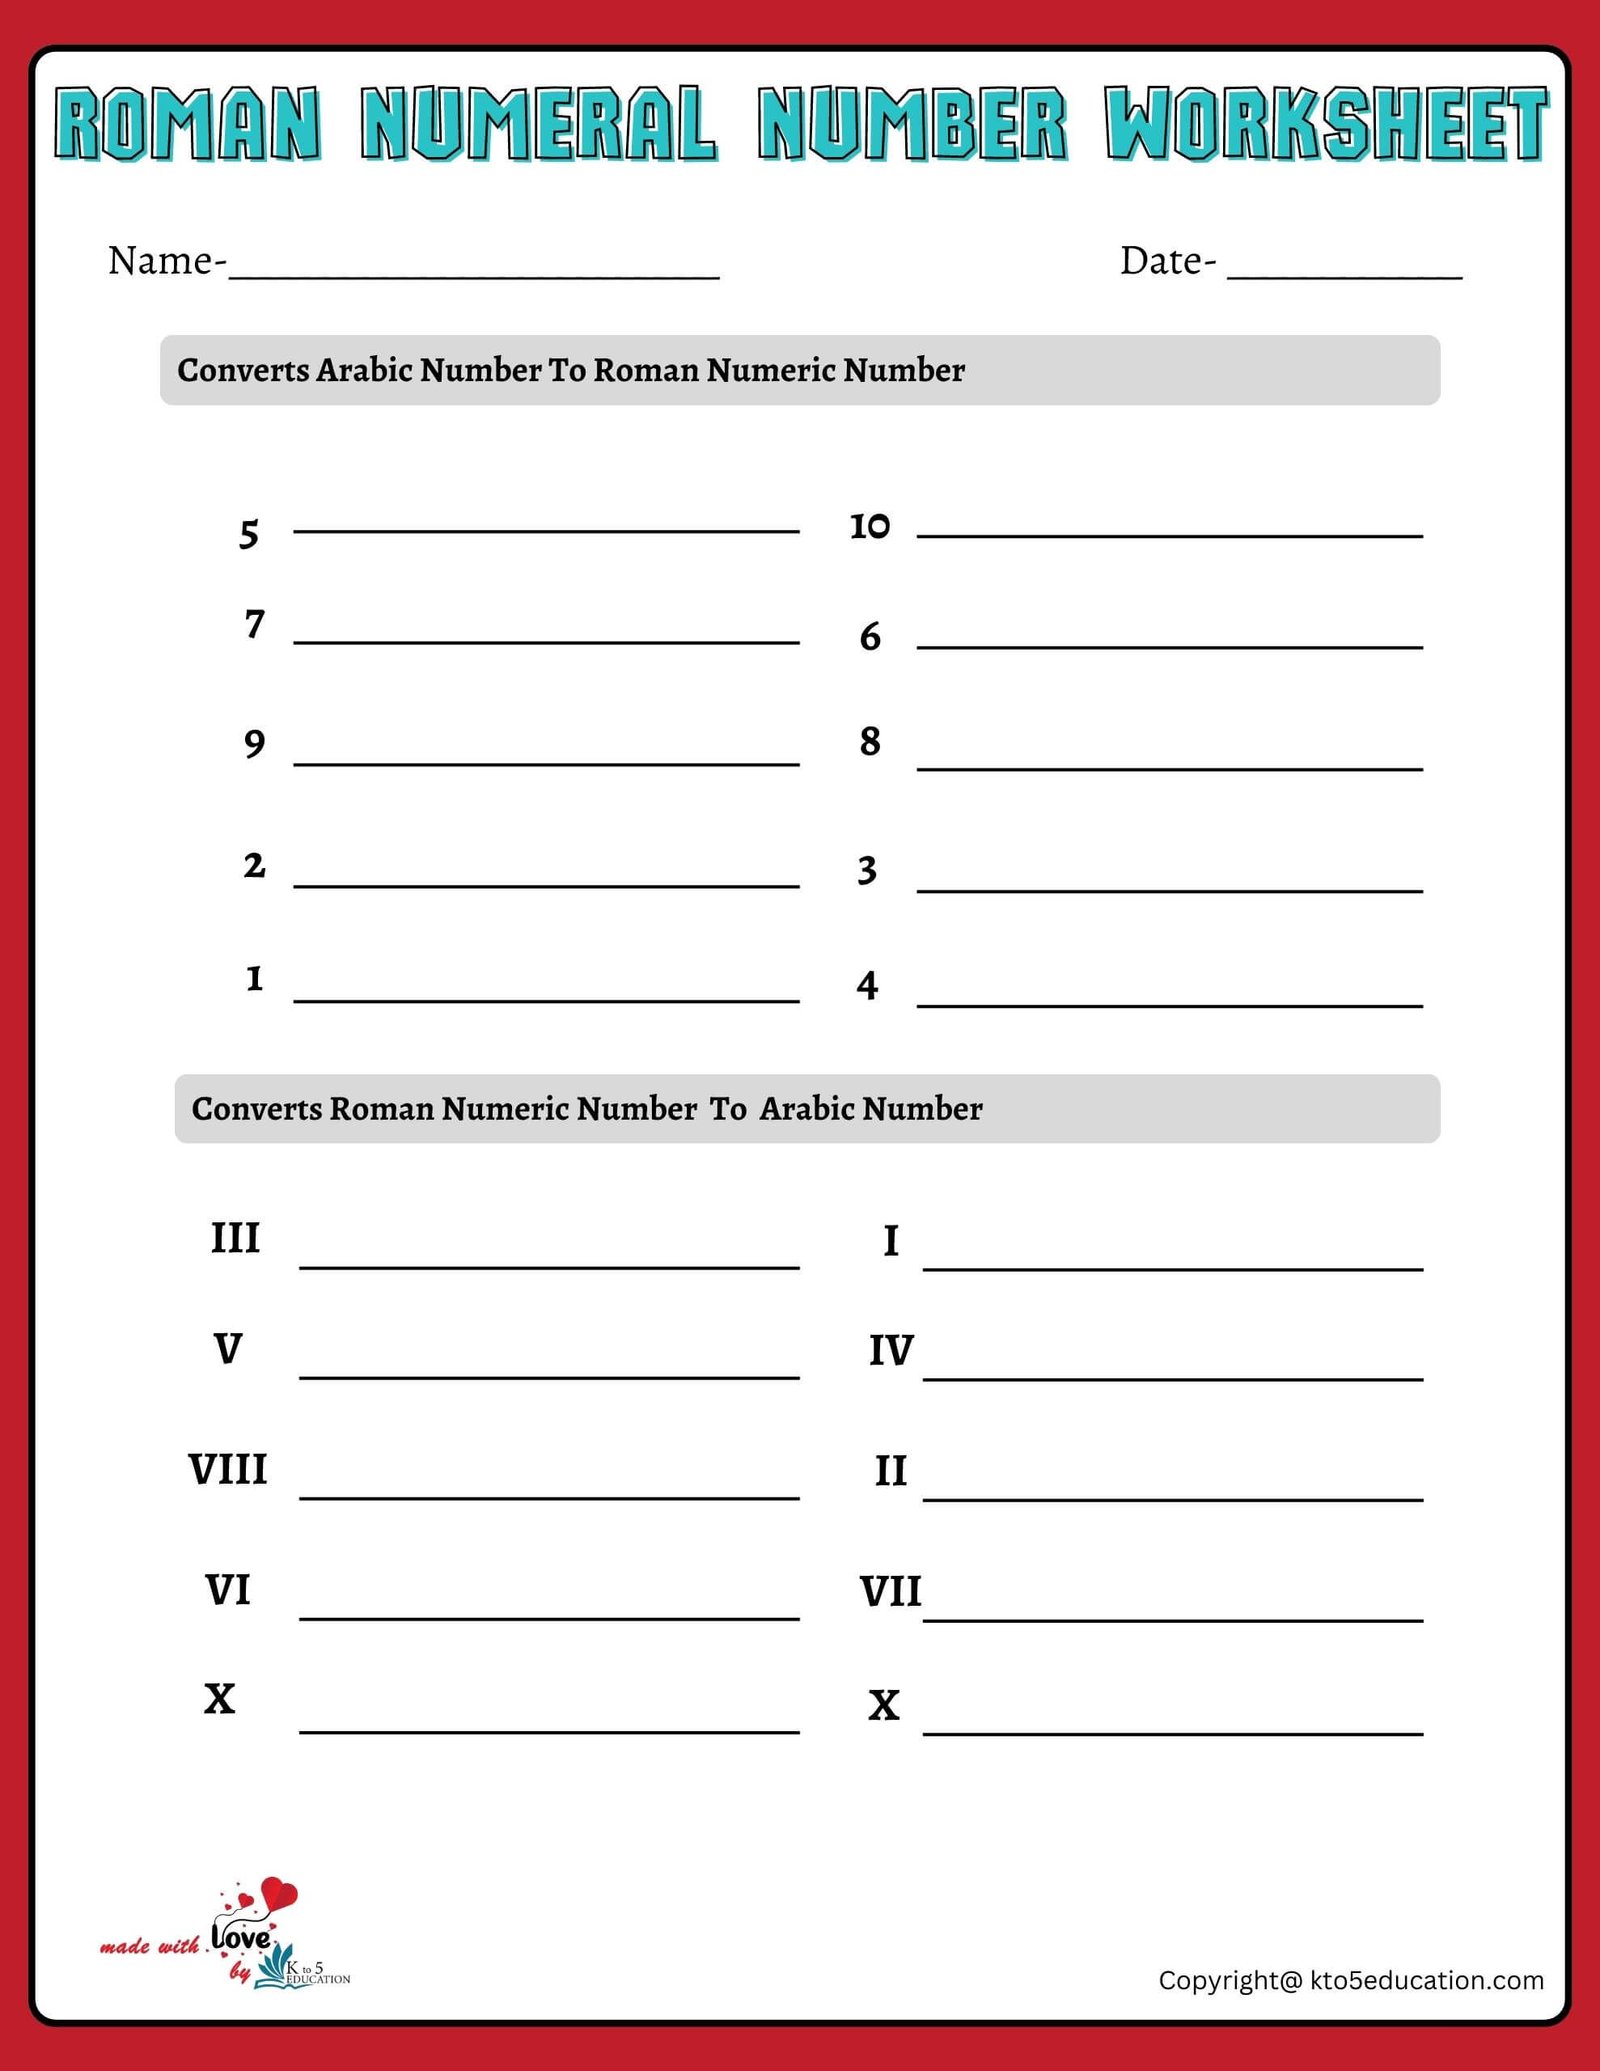 Roman Numeral Numbers Practice Worksheet